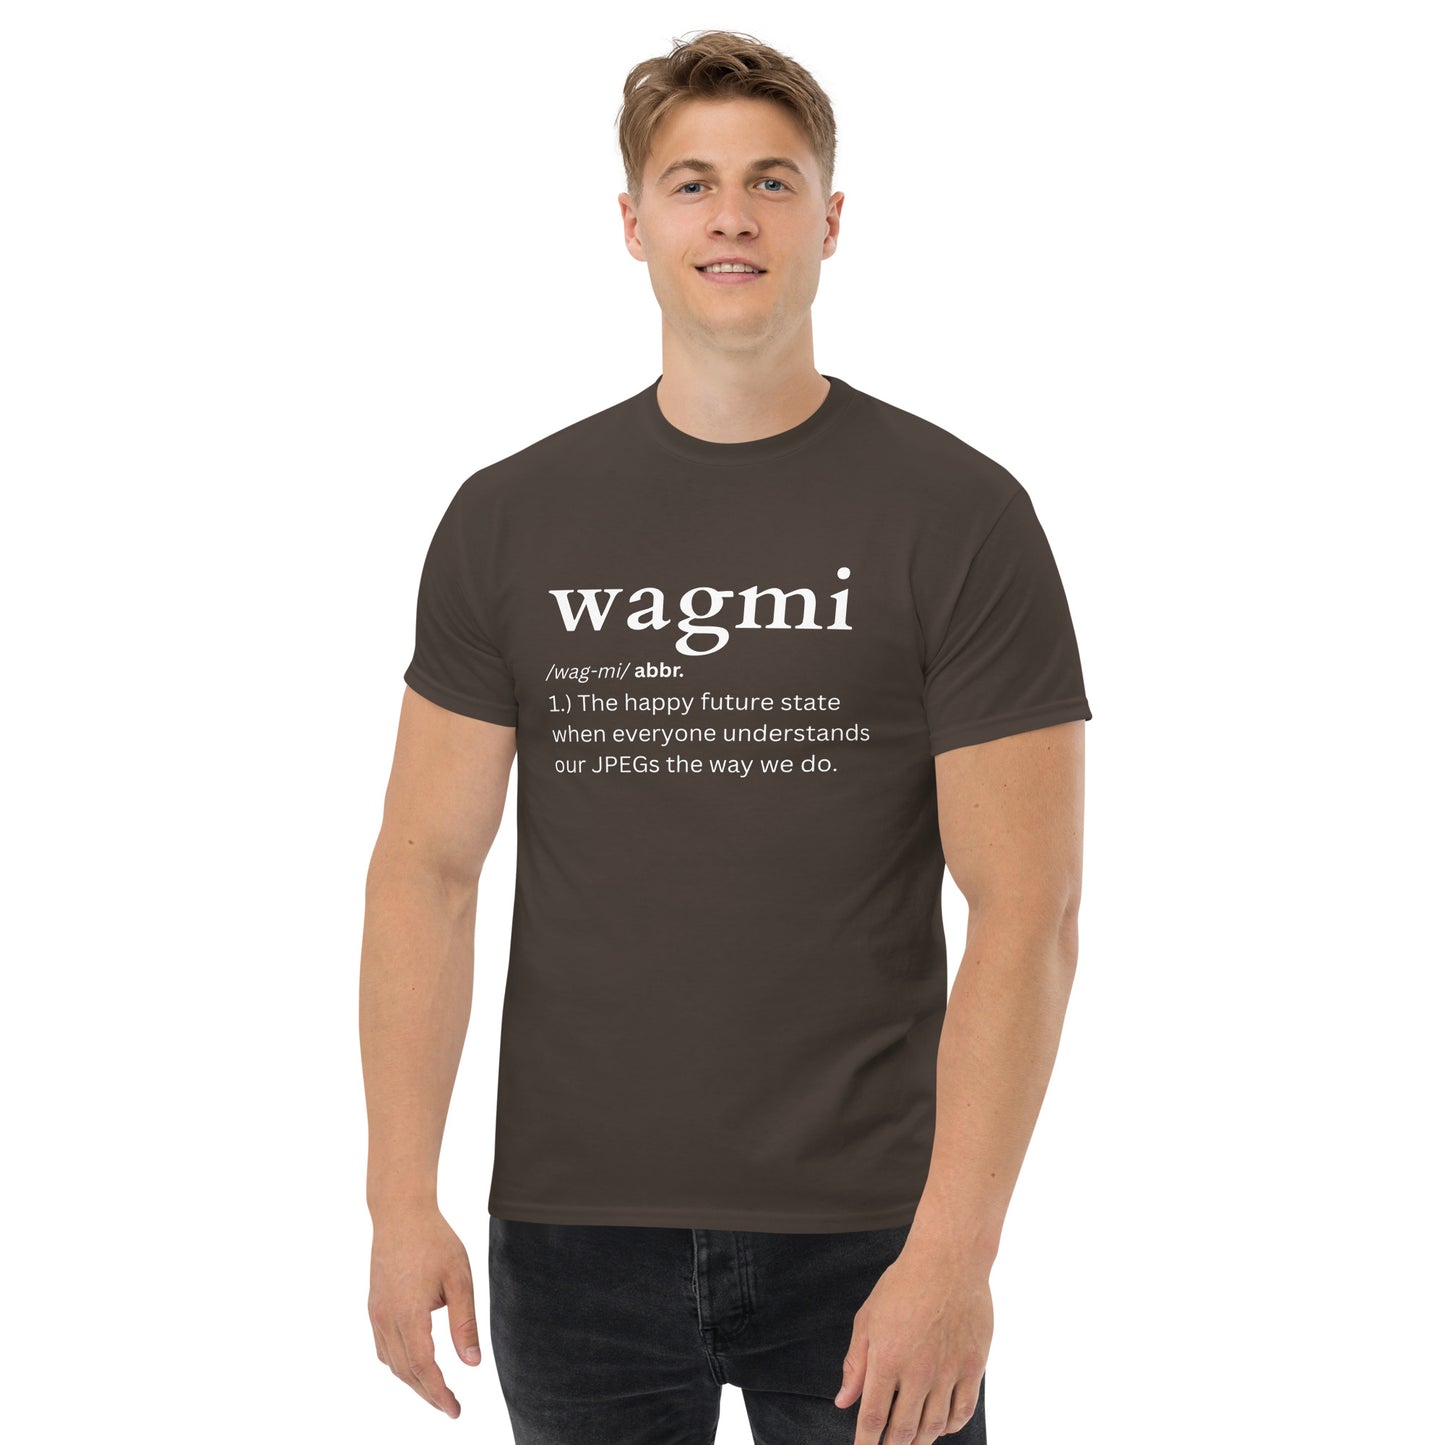 wagmi-tee-shirt-dark-chocolate